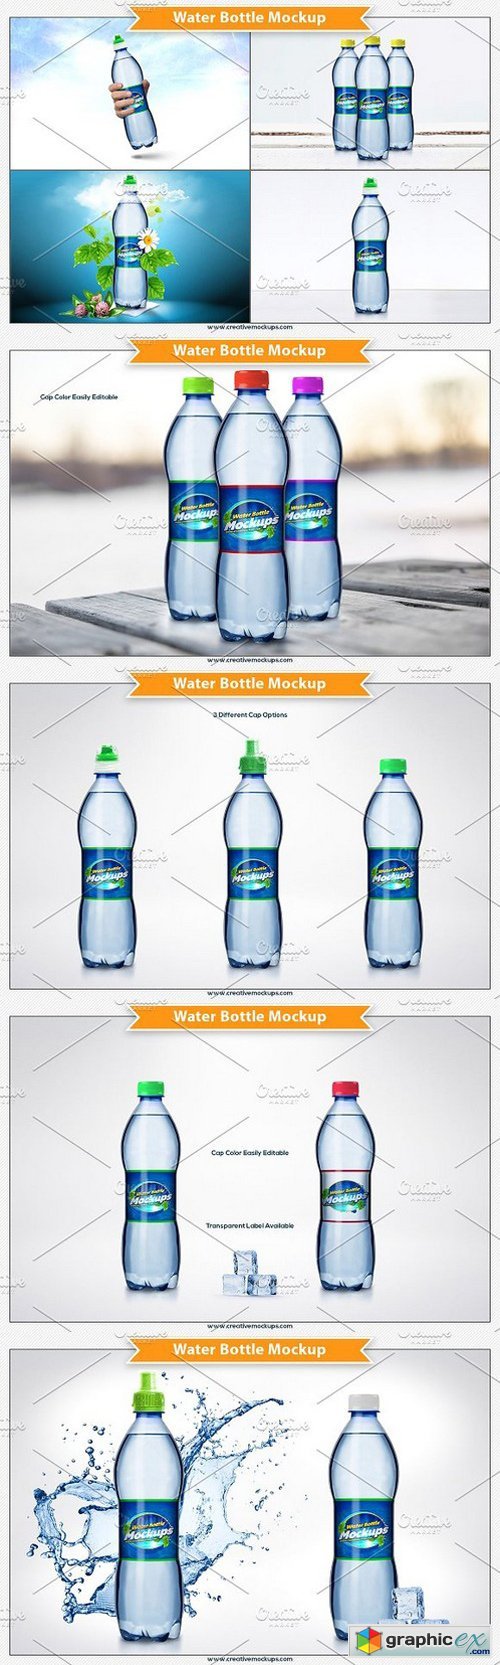 Water Bottle Mockup 1279703